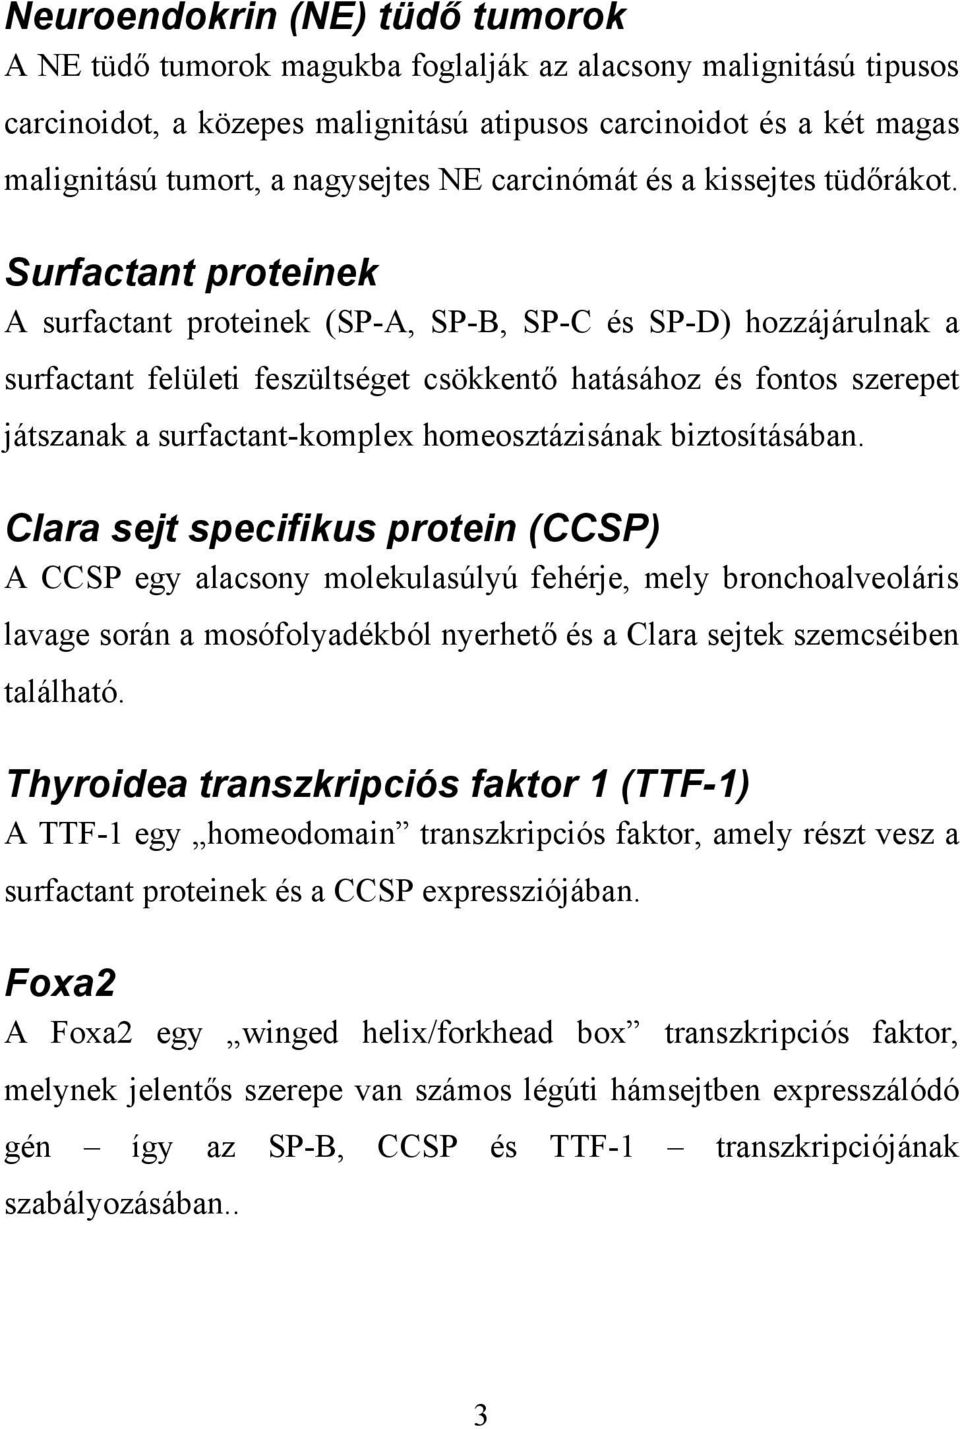 Surfactant proteinek A surfactant proteinek (SP-A, SP-B, SP-C és SP-D) hozzájárulnak a surfactant felületi feszültséget csökkentő hatásához és fontos szerepet játszanak a surfactant-komplex